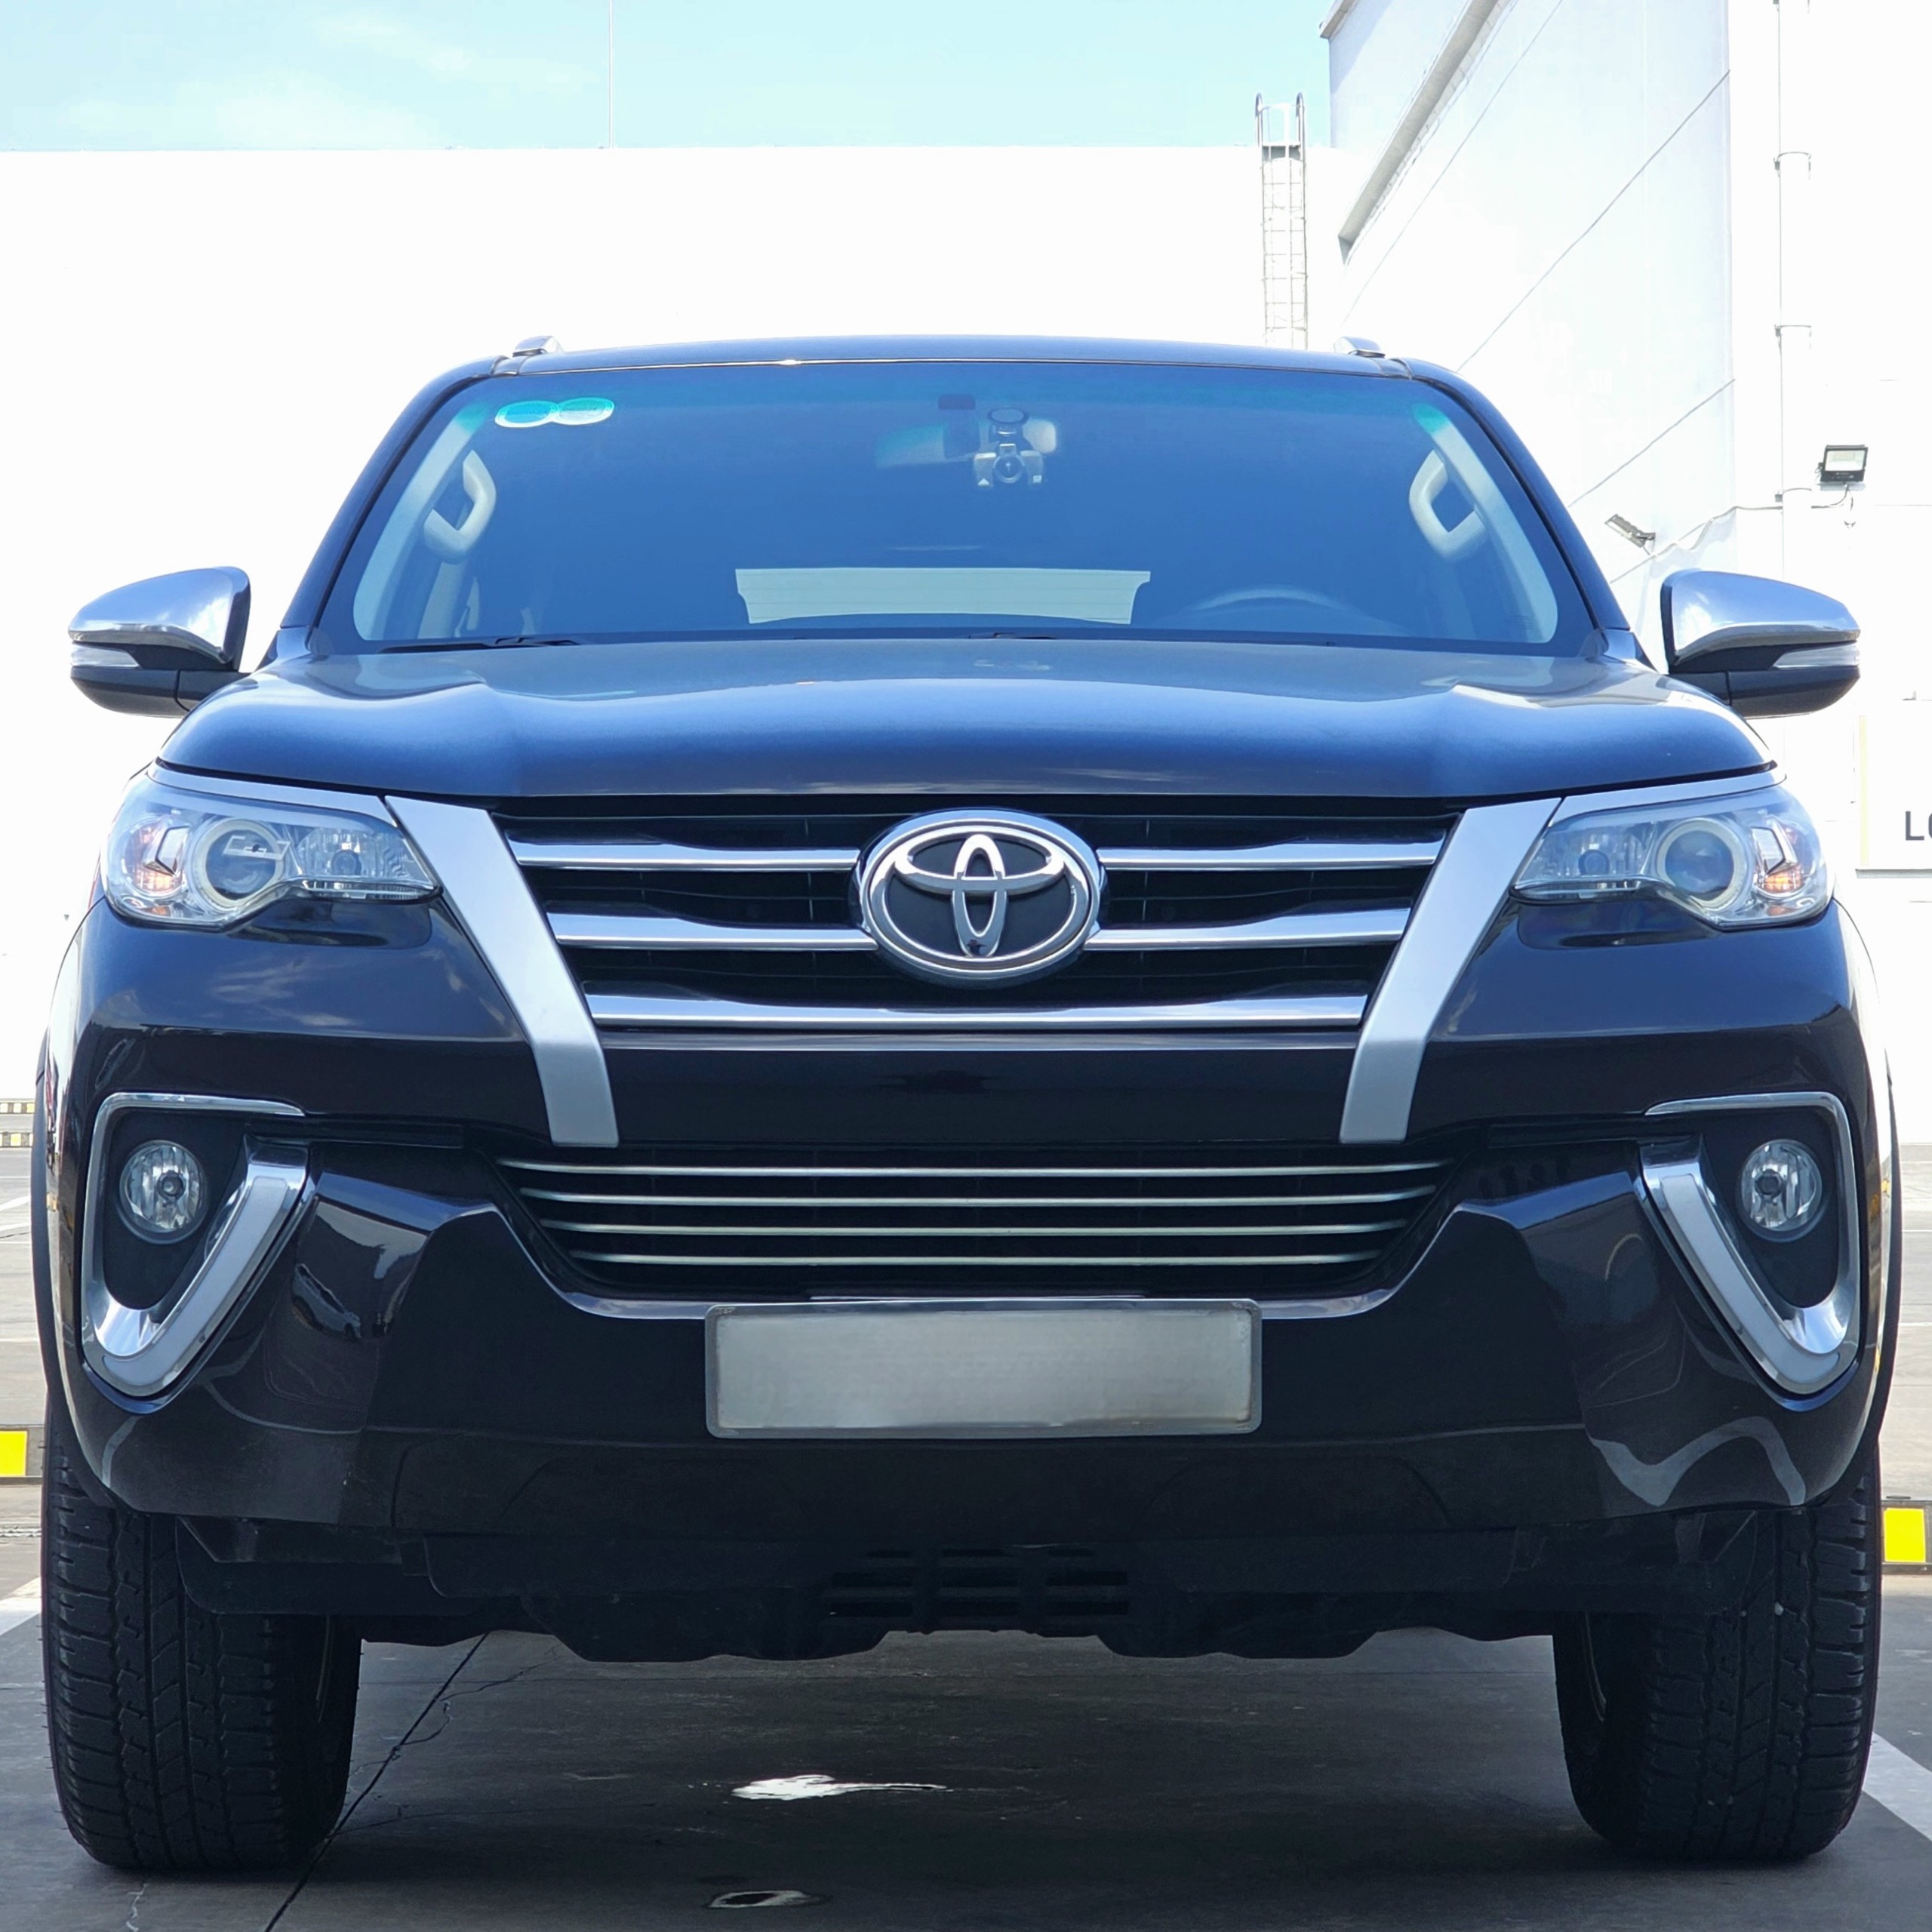 Toyota Fortuner 2.4G sàn dầu 2019 nhập khẩu Indonesia biển số trắng